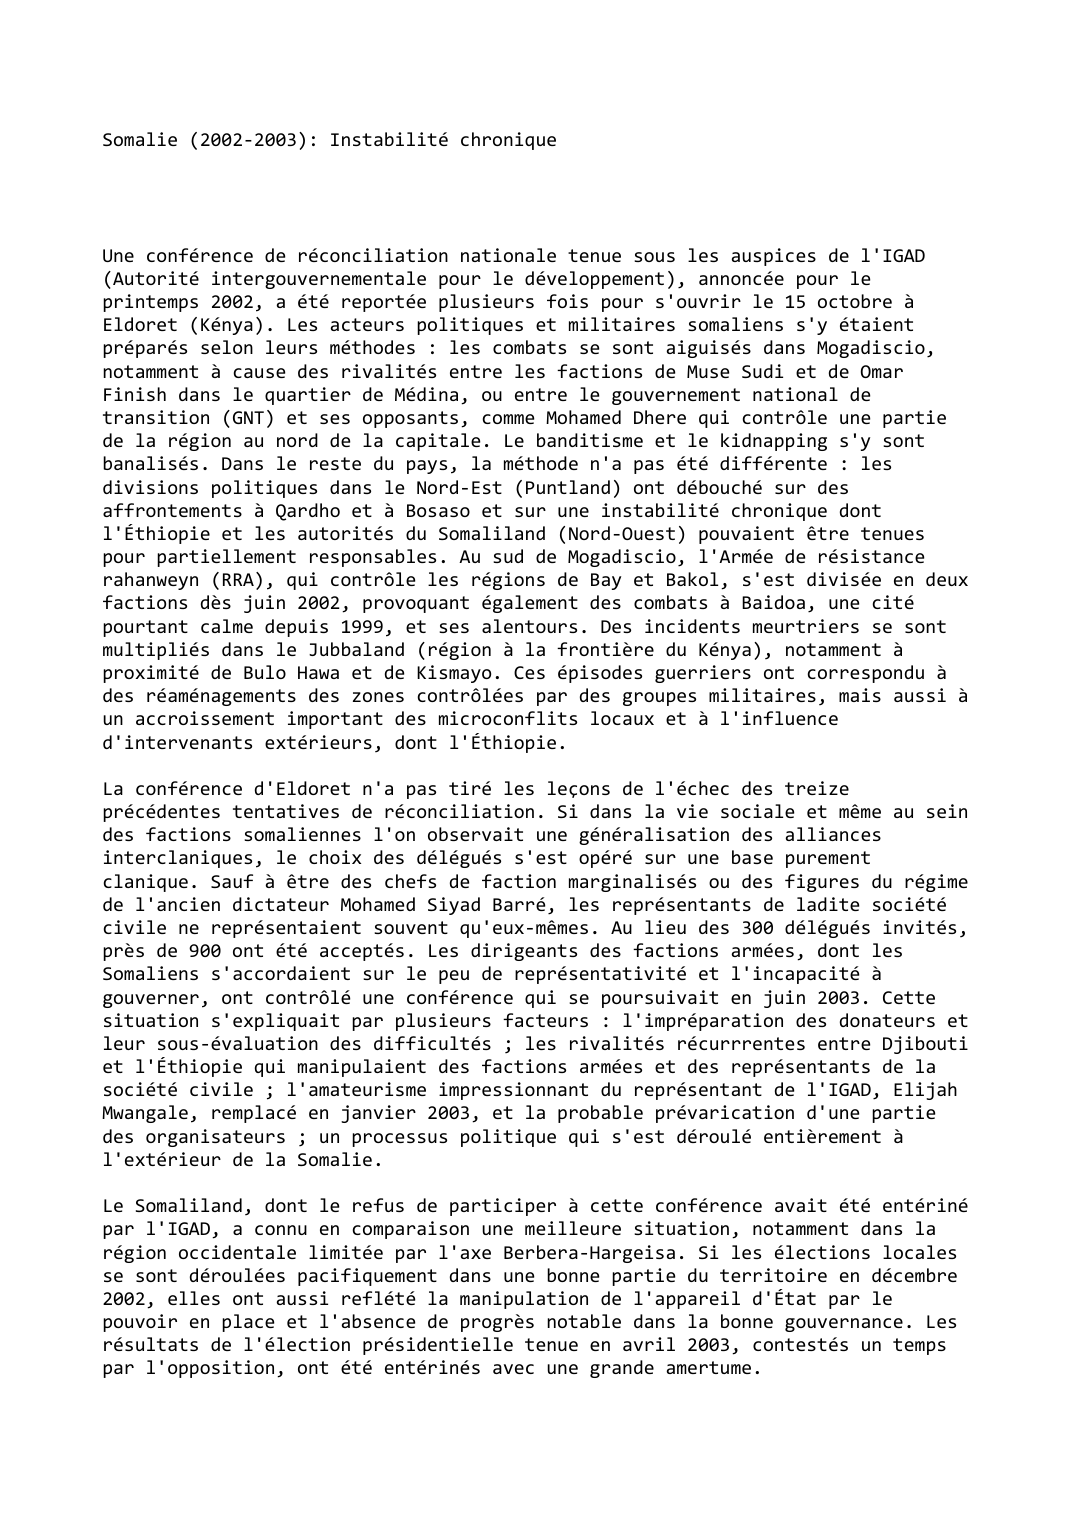 Prévisualisation du document Somalie (2002-2003): Instabilité chronique